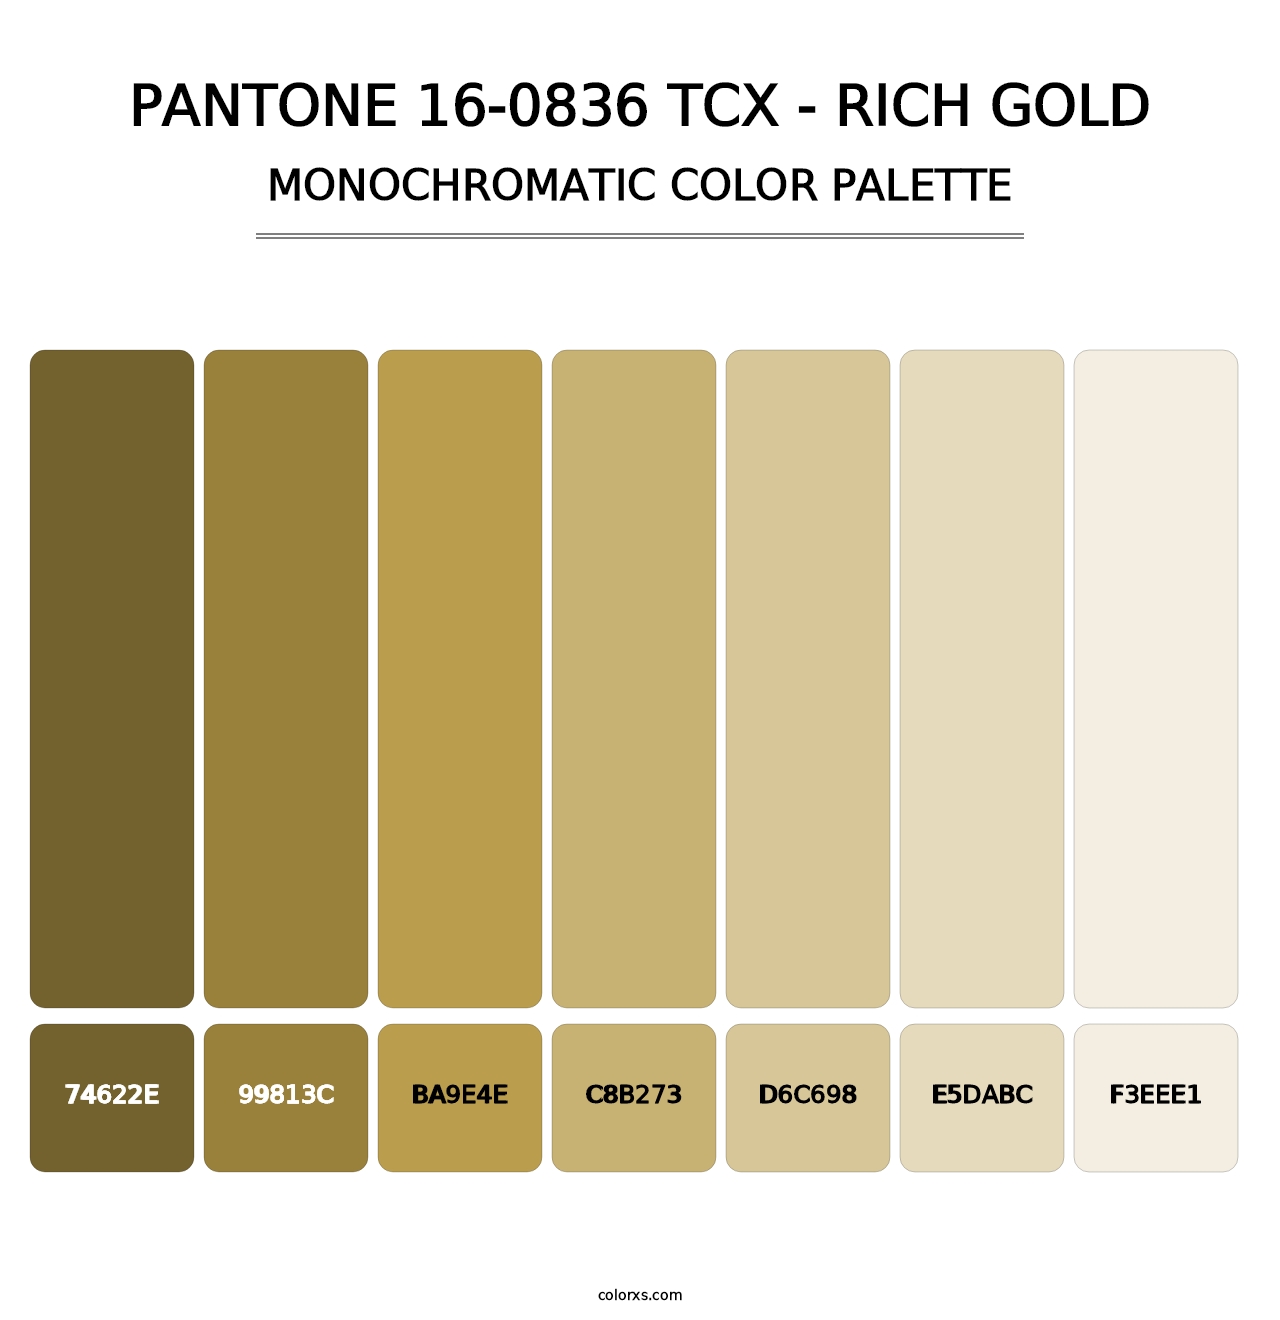 PANTONE 16-0836 TCX - Rich Gold - Monochromatic Color Palette